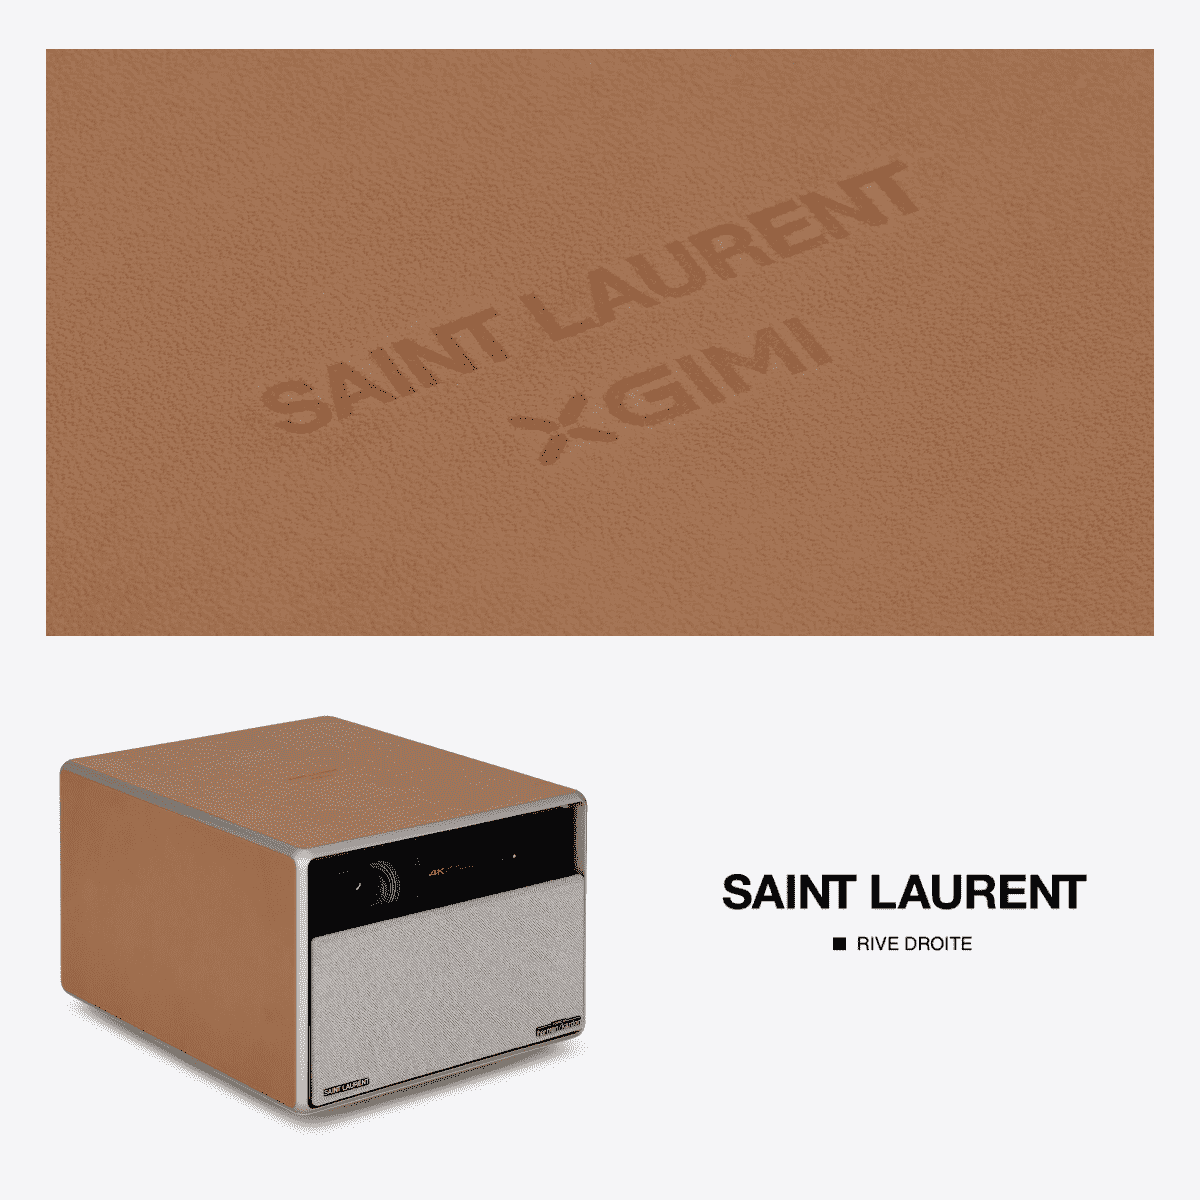 Saint Laurent Rive Droite and XGIMI Announce a Special Collaboration: The HORIZON Ultra Saint Laurent Edition